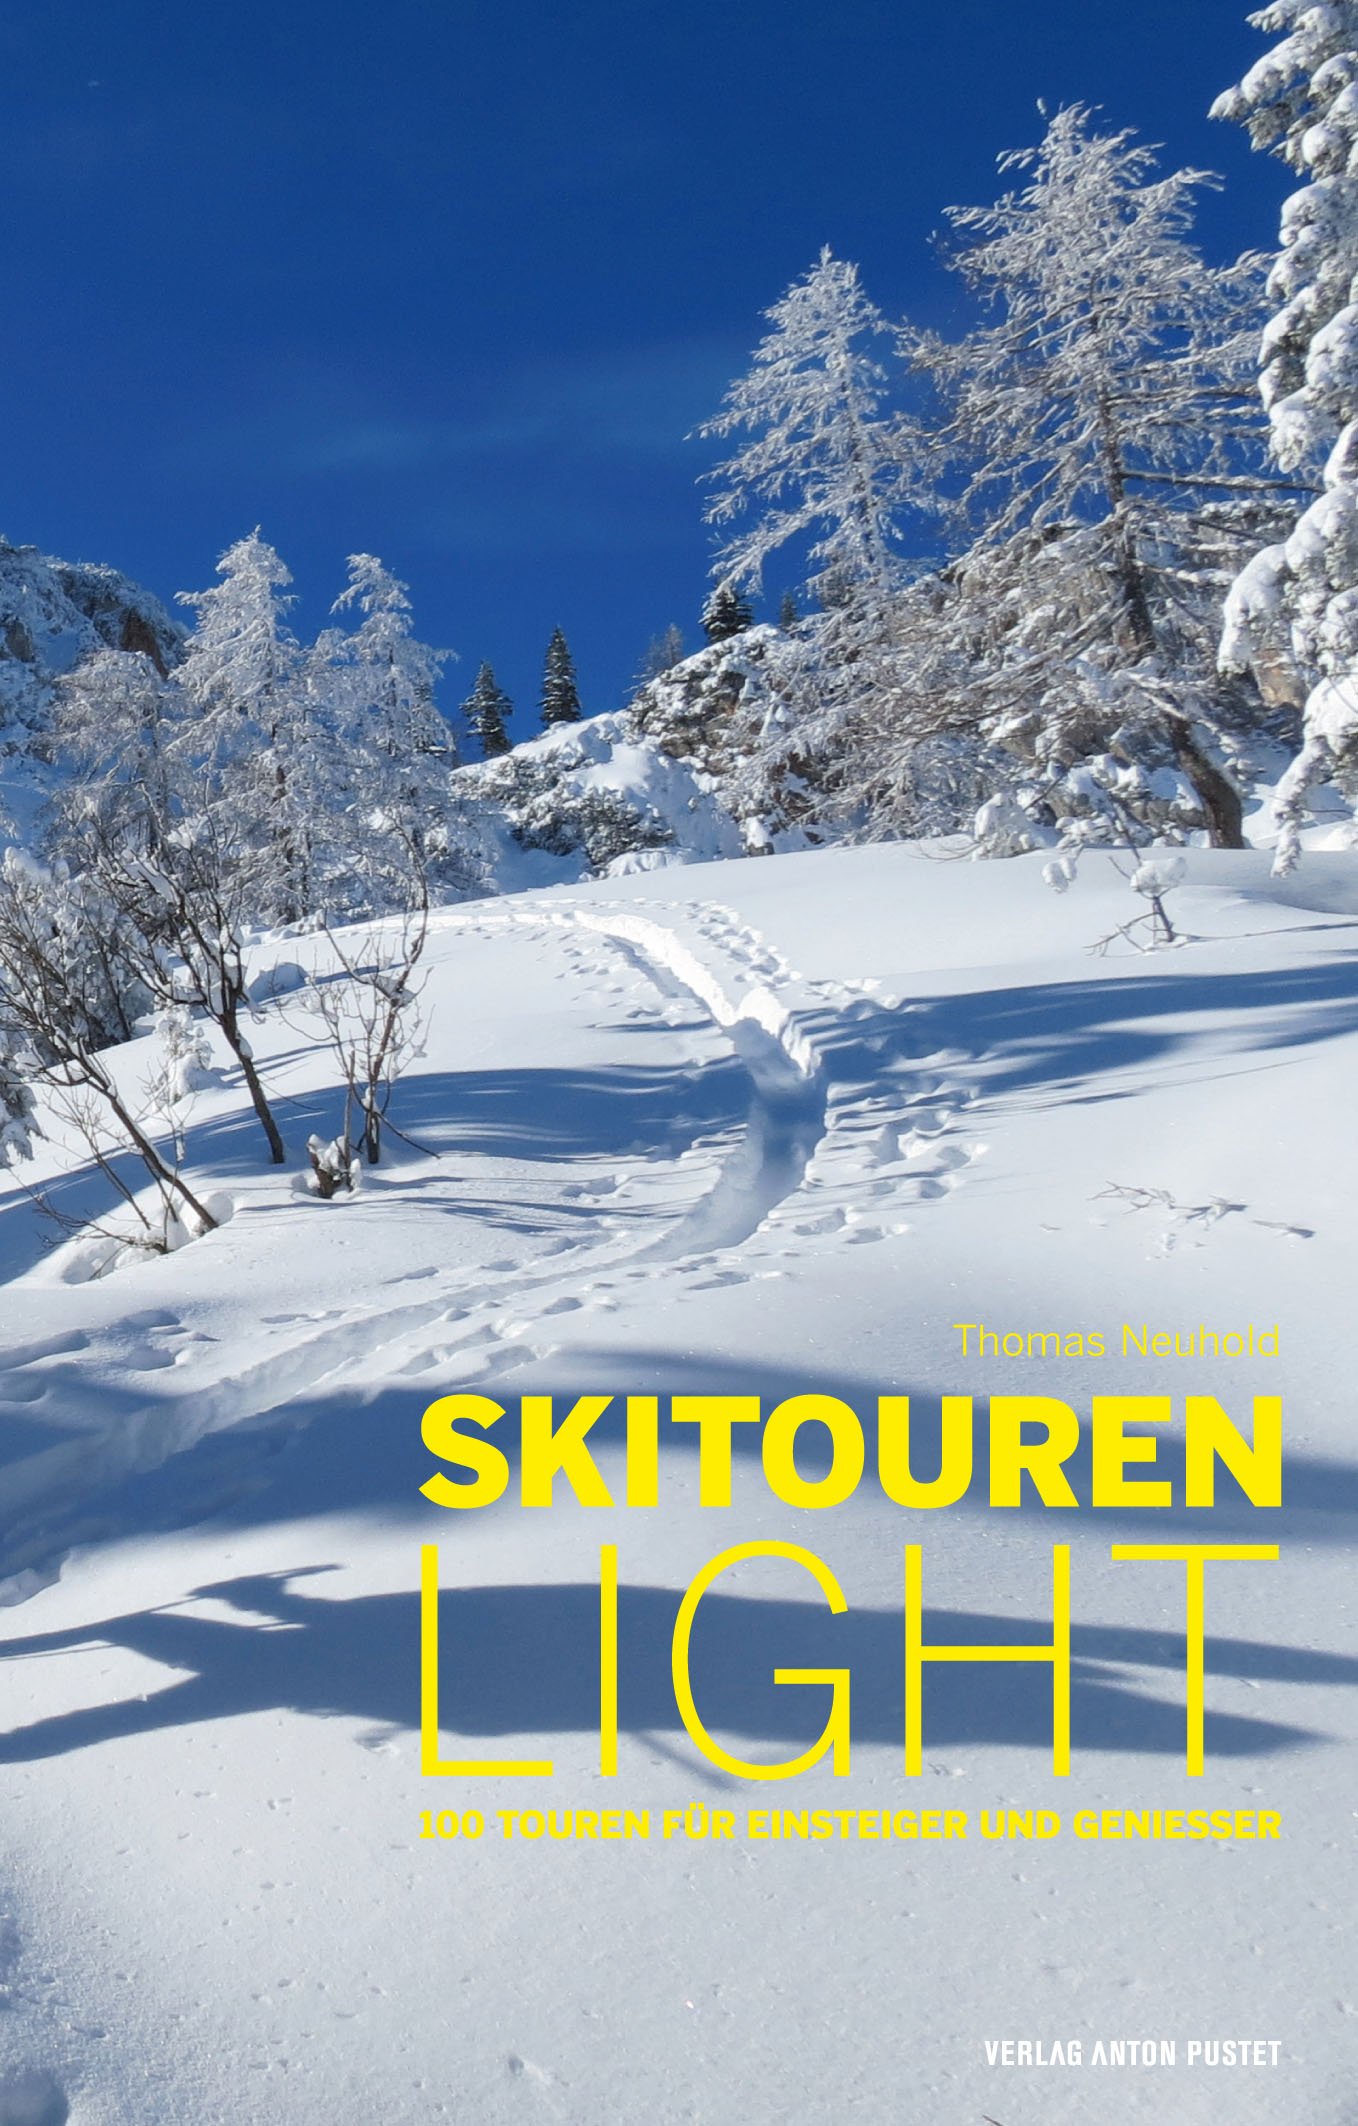 Skitouren light von Thomas Neuhold